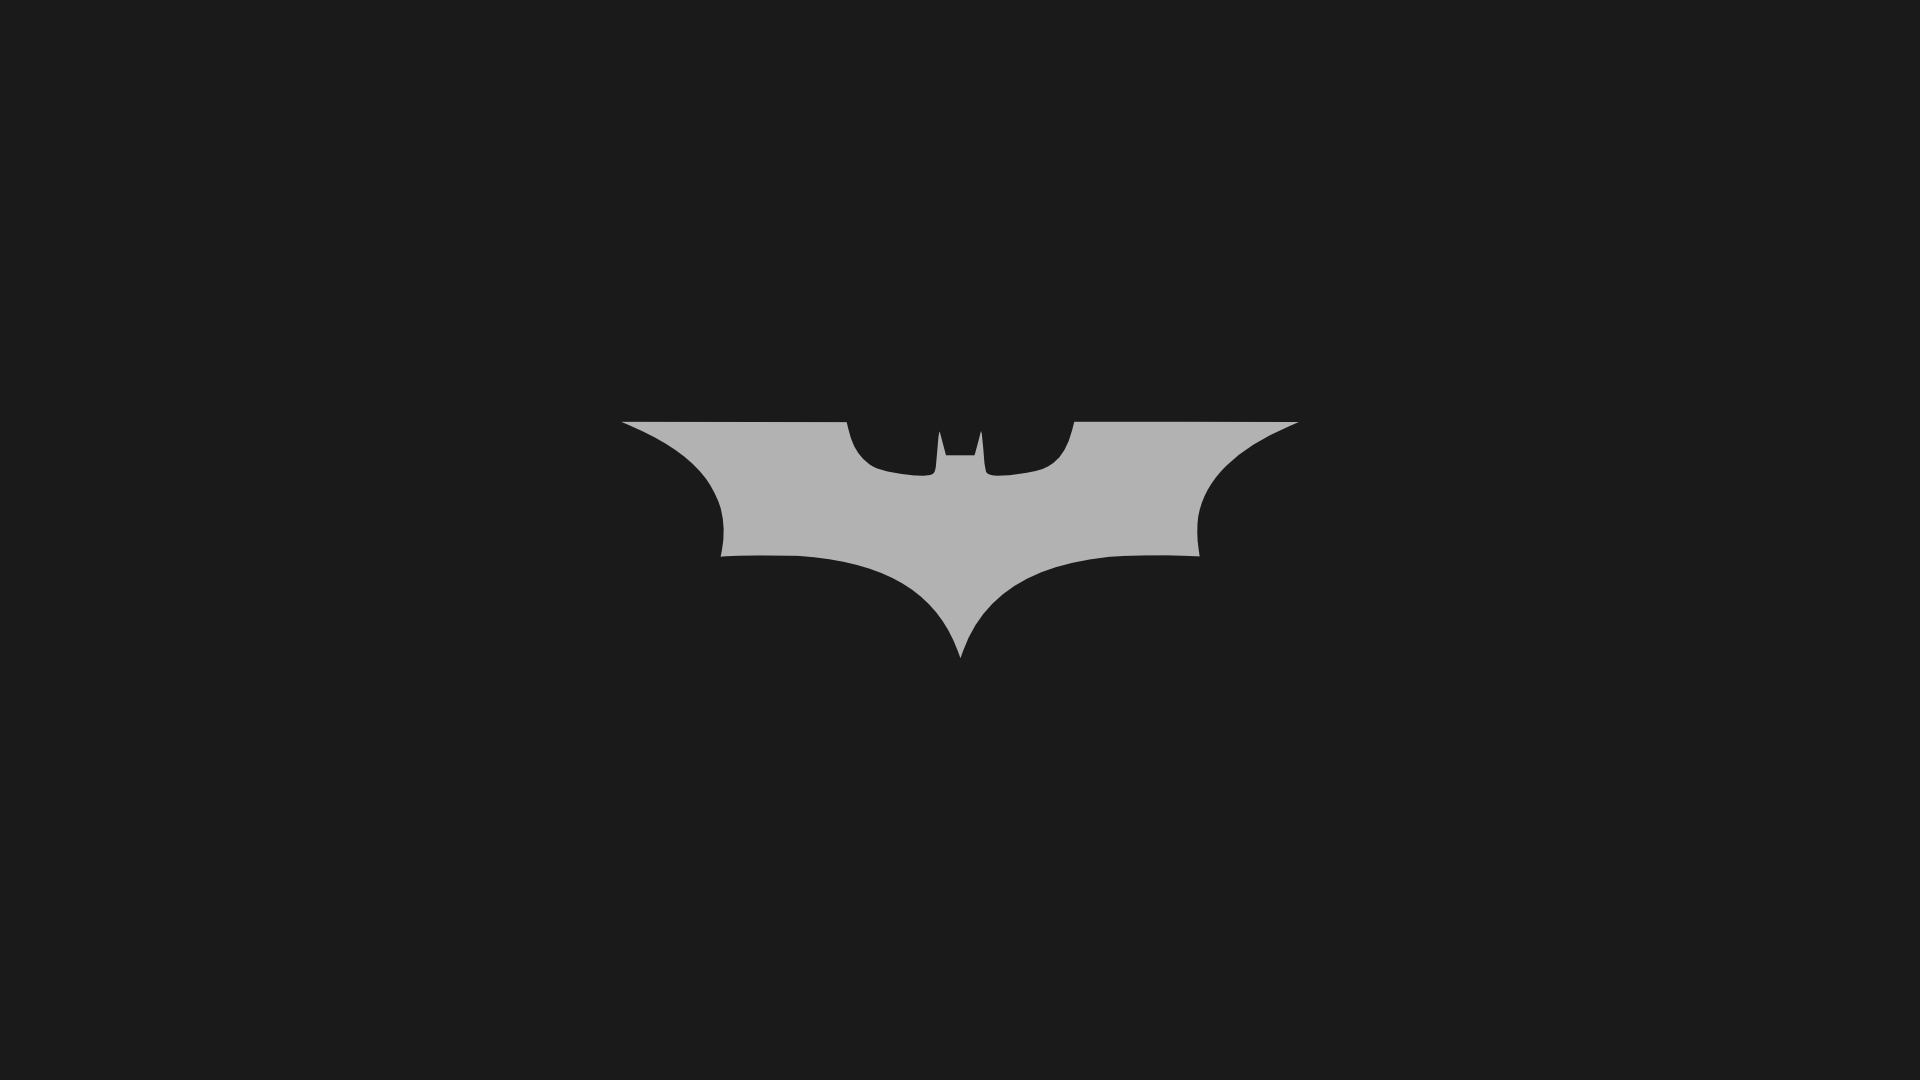  Batman Logo Iphone Wallpaper   batman logo wallpaper 6   Anglerzcom 1920x1080